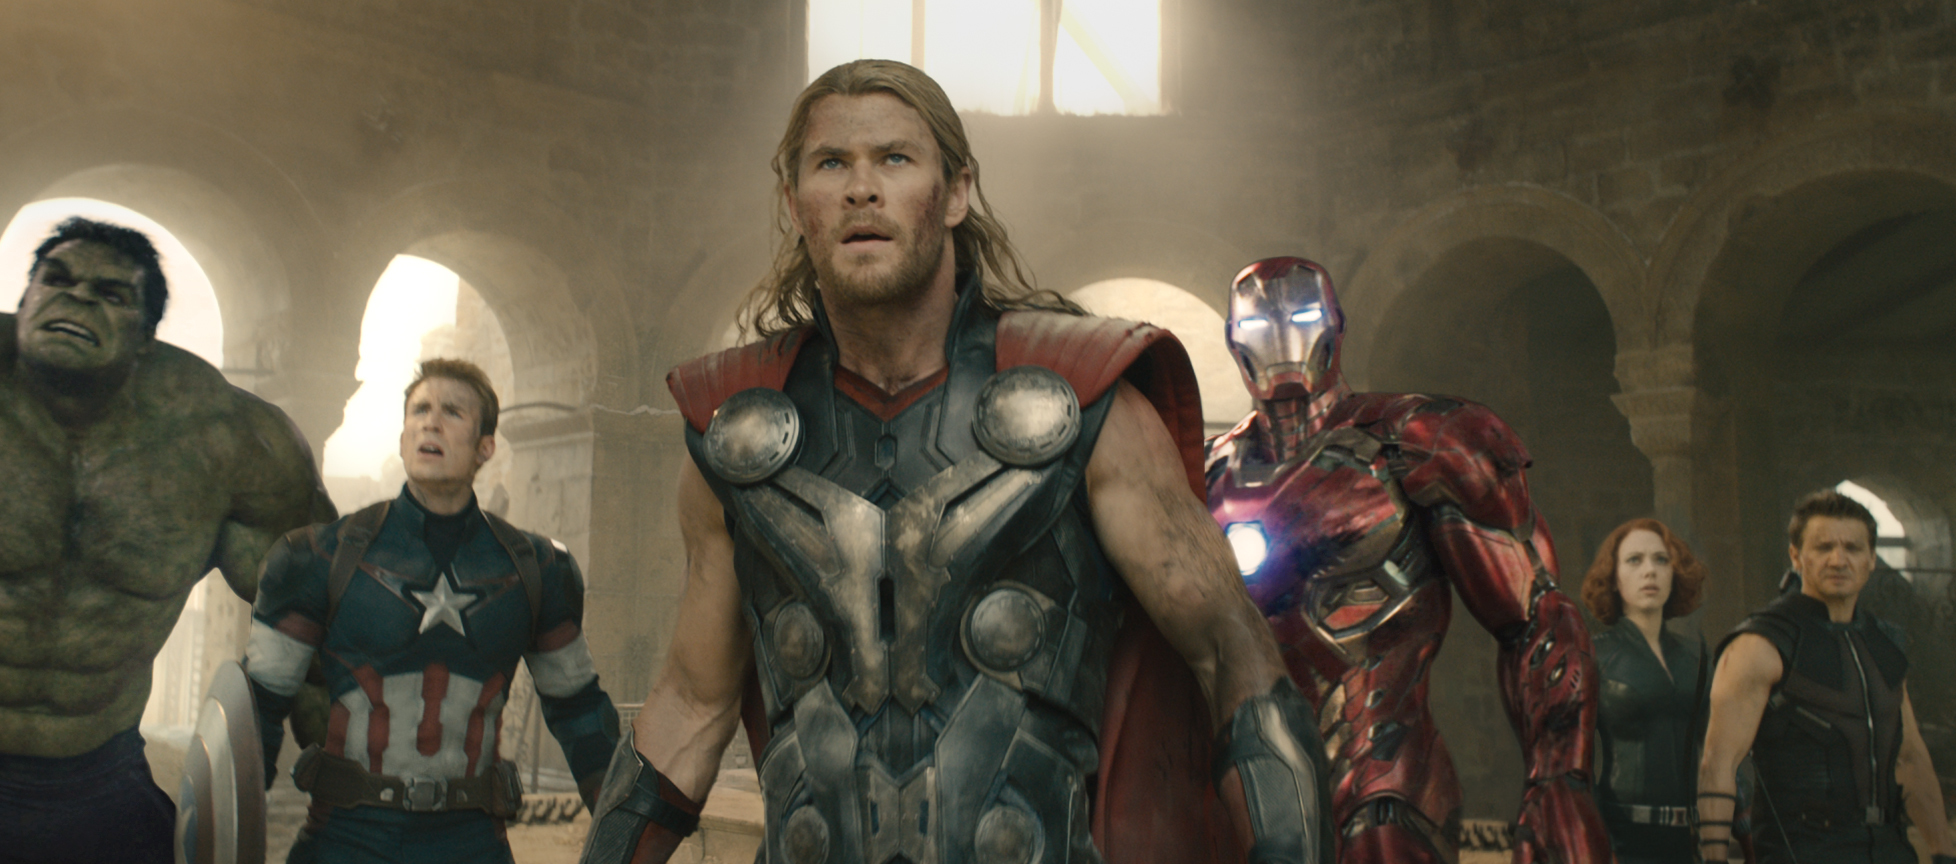 Whedon, Joss, dir. Avengers: Age of Ultron. 2015.